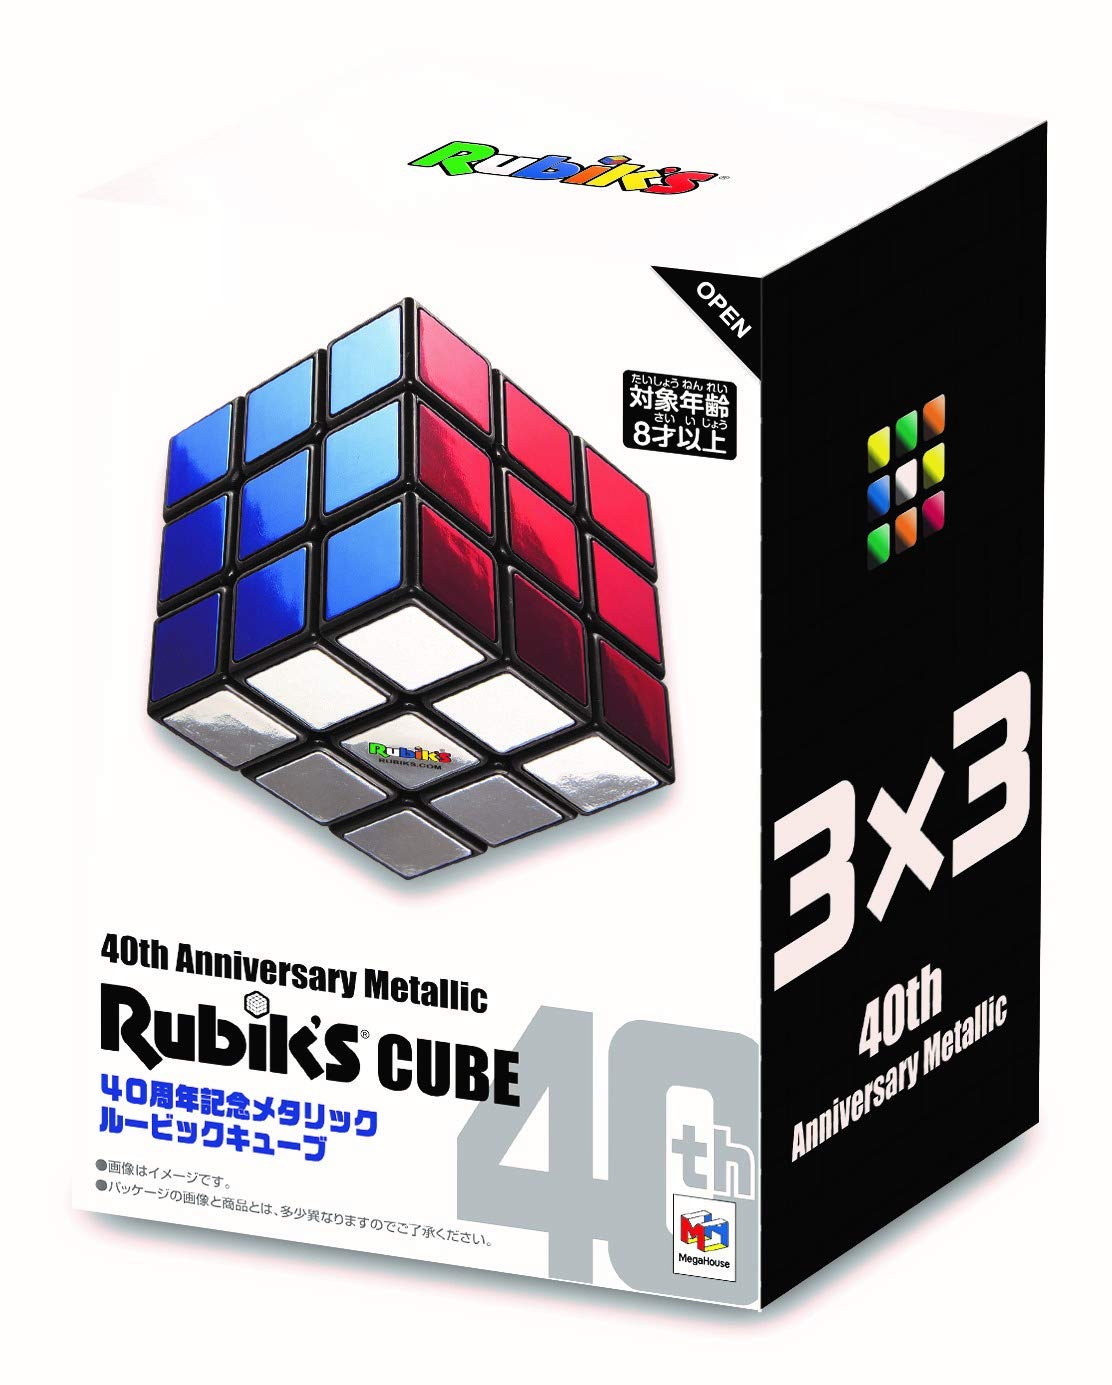 40th Anniversary Metallic Rubik's cube_New 